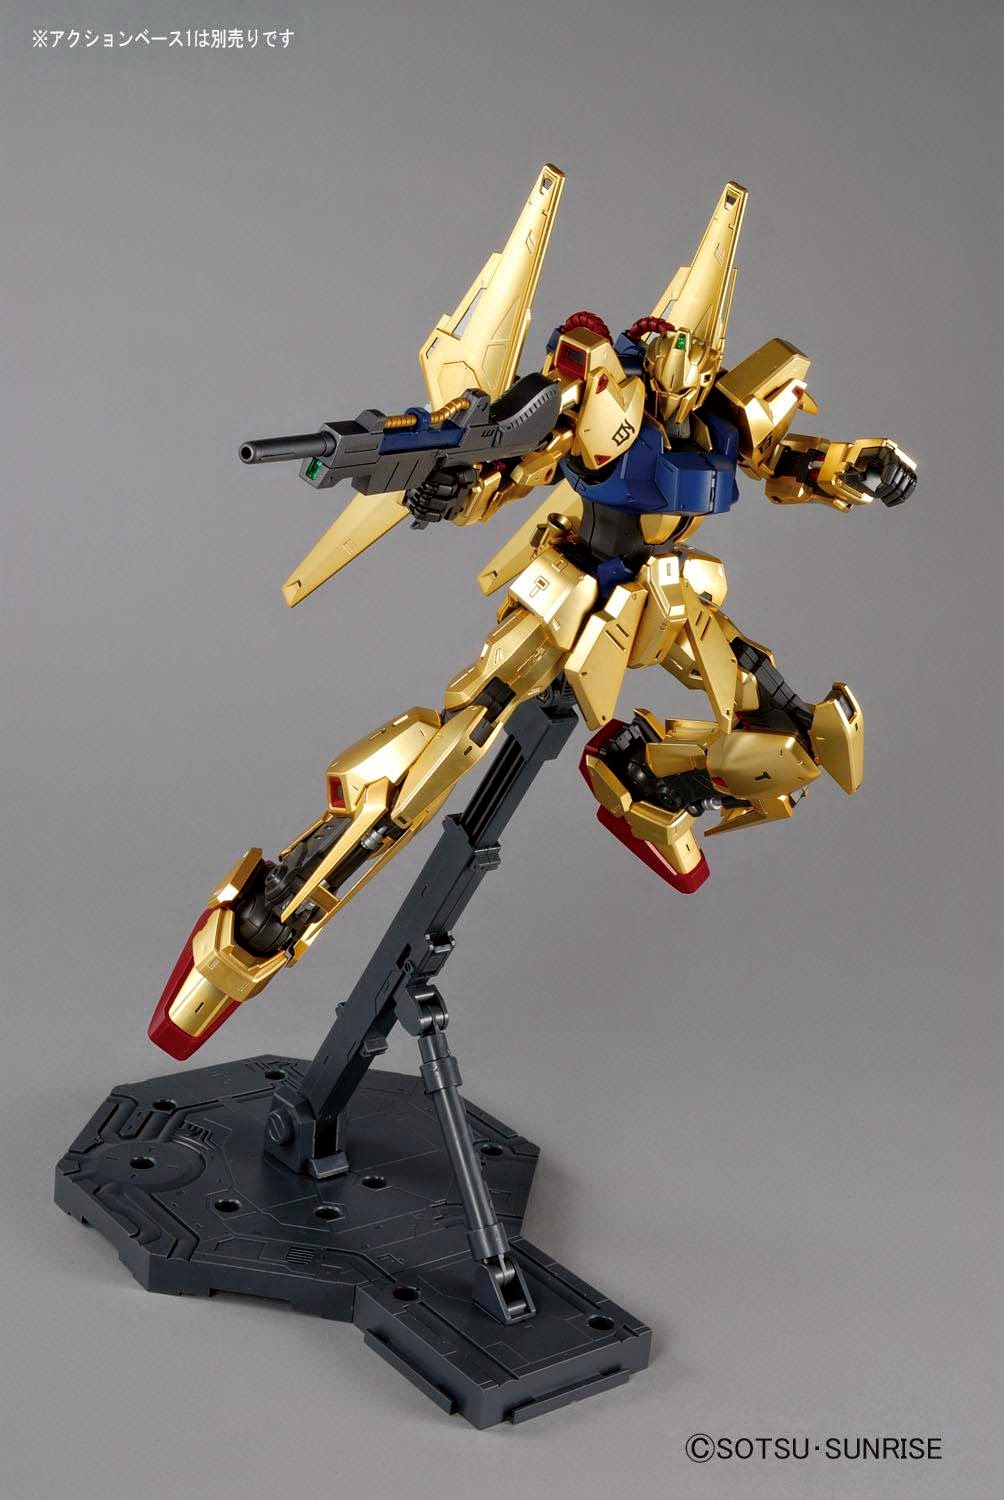 Hyaku Shiki Ver Mg Gundam Toys Shop Gunpla Model Kits